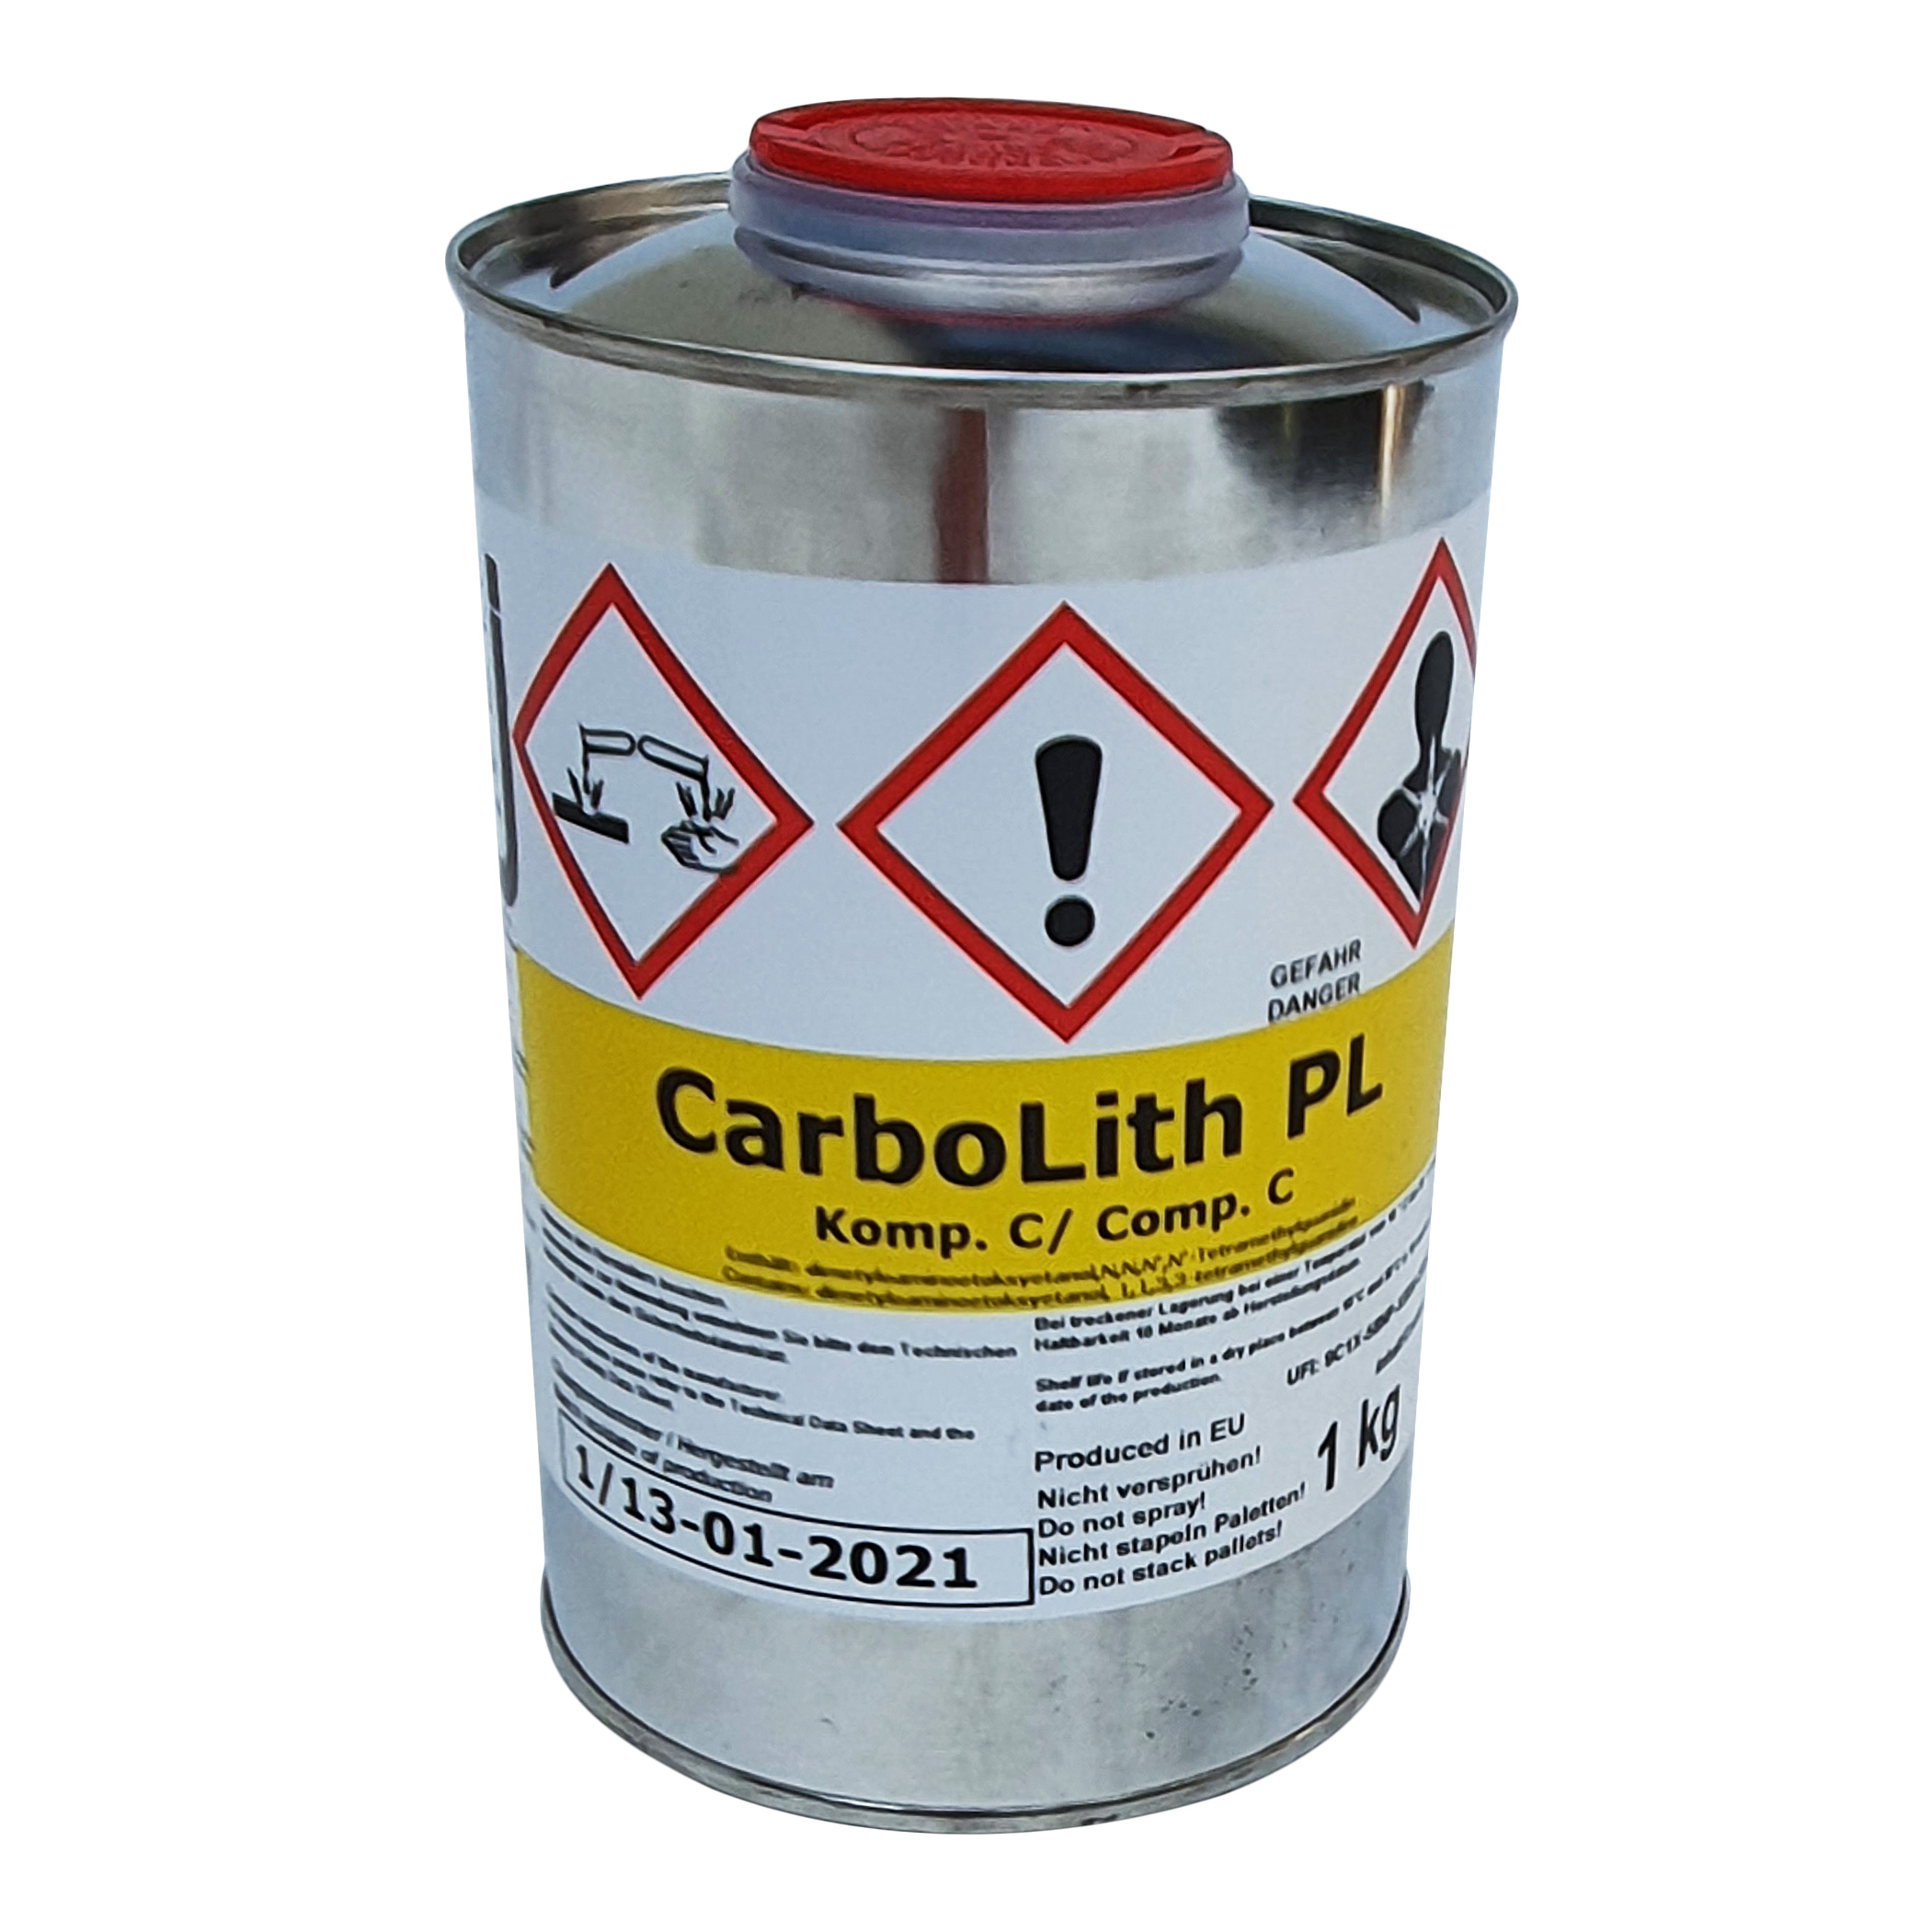 3K Carbolith PL Harz, Komponente C, 1 kg Additiv